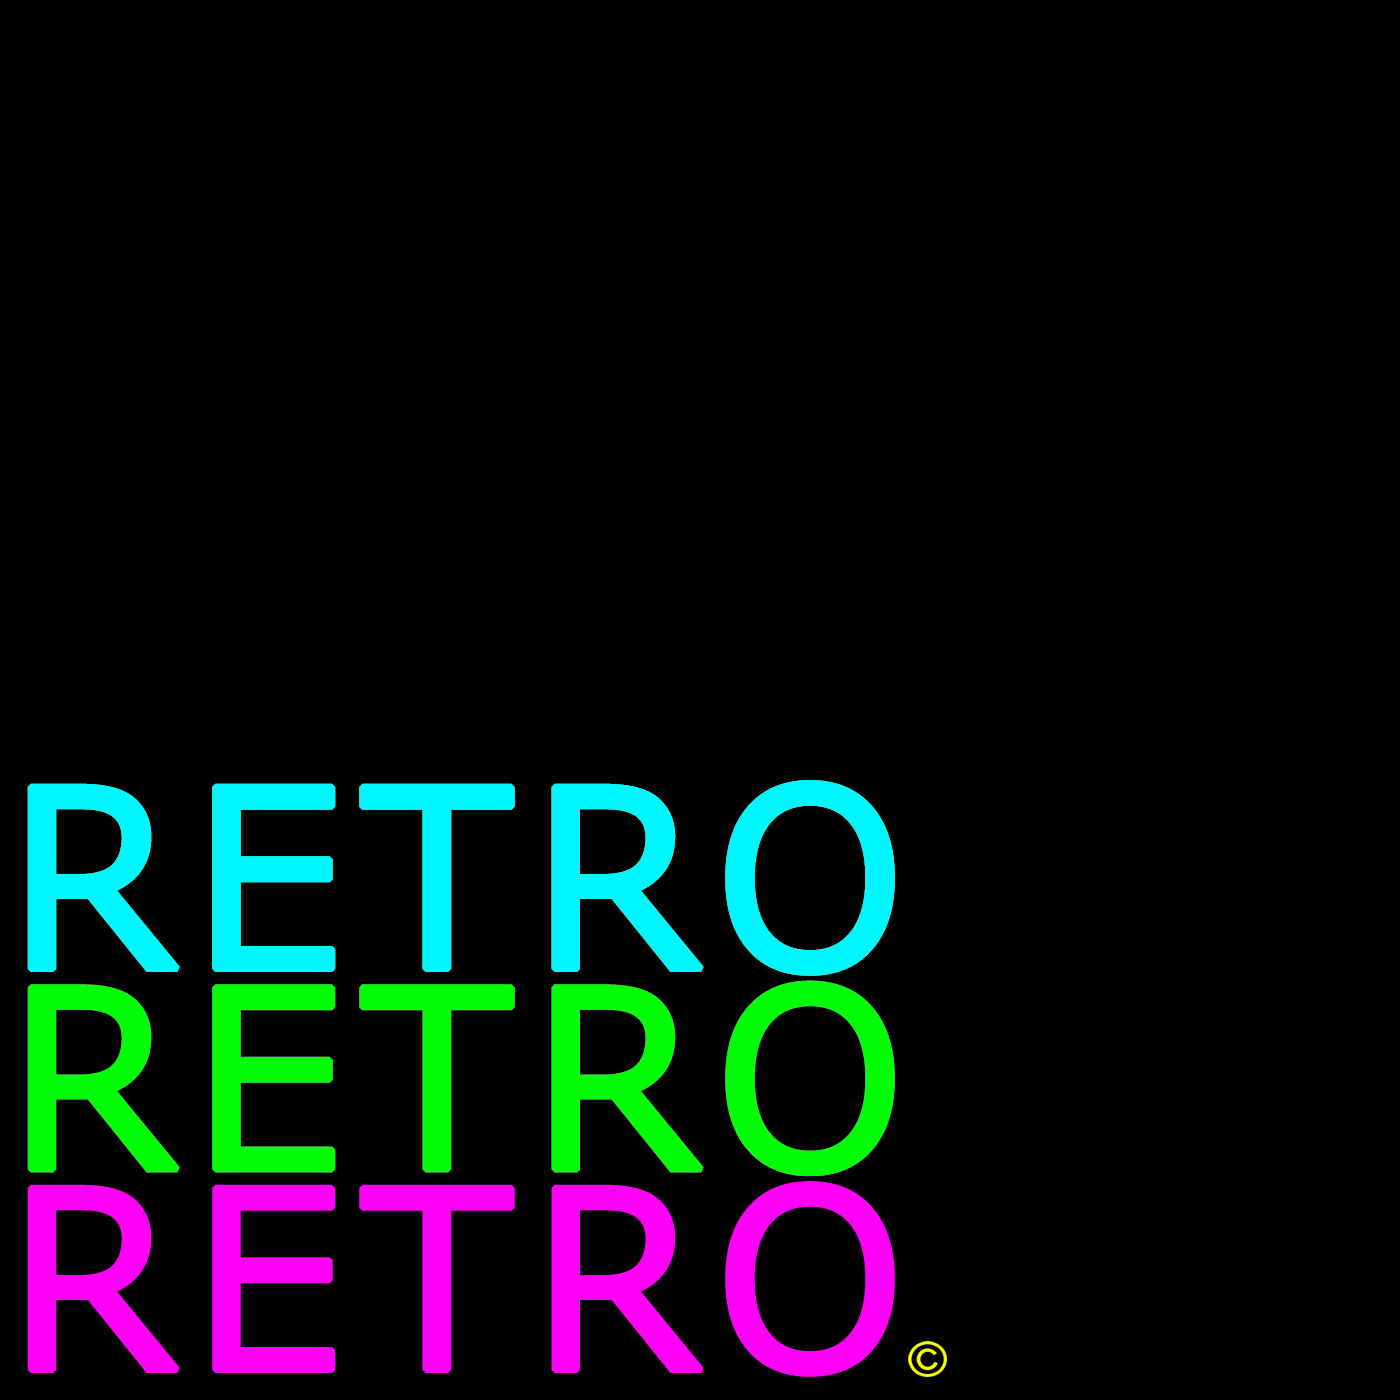 Retro Retro Retro - August 2017